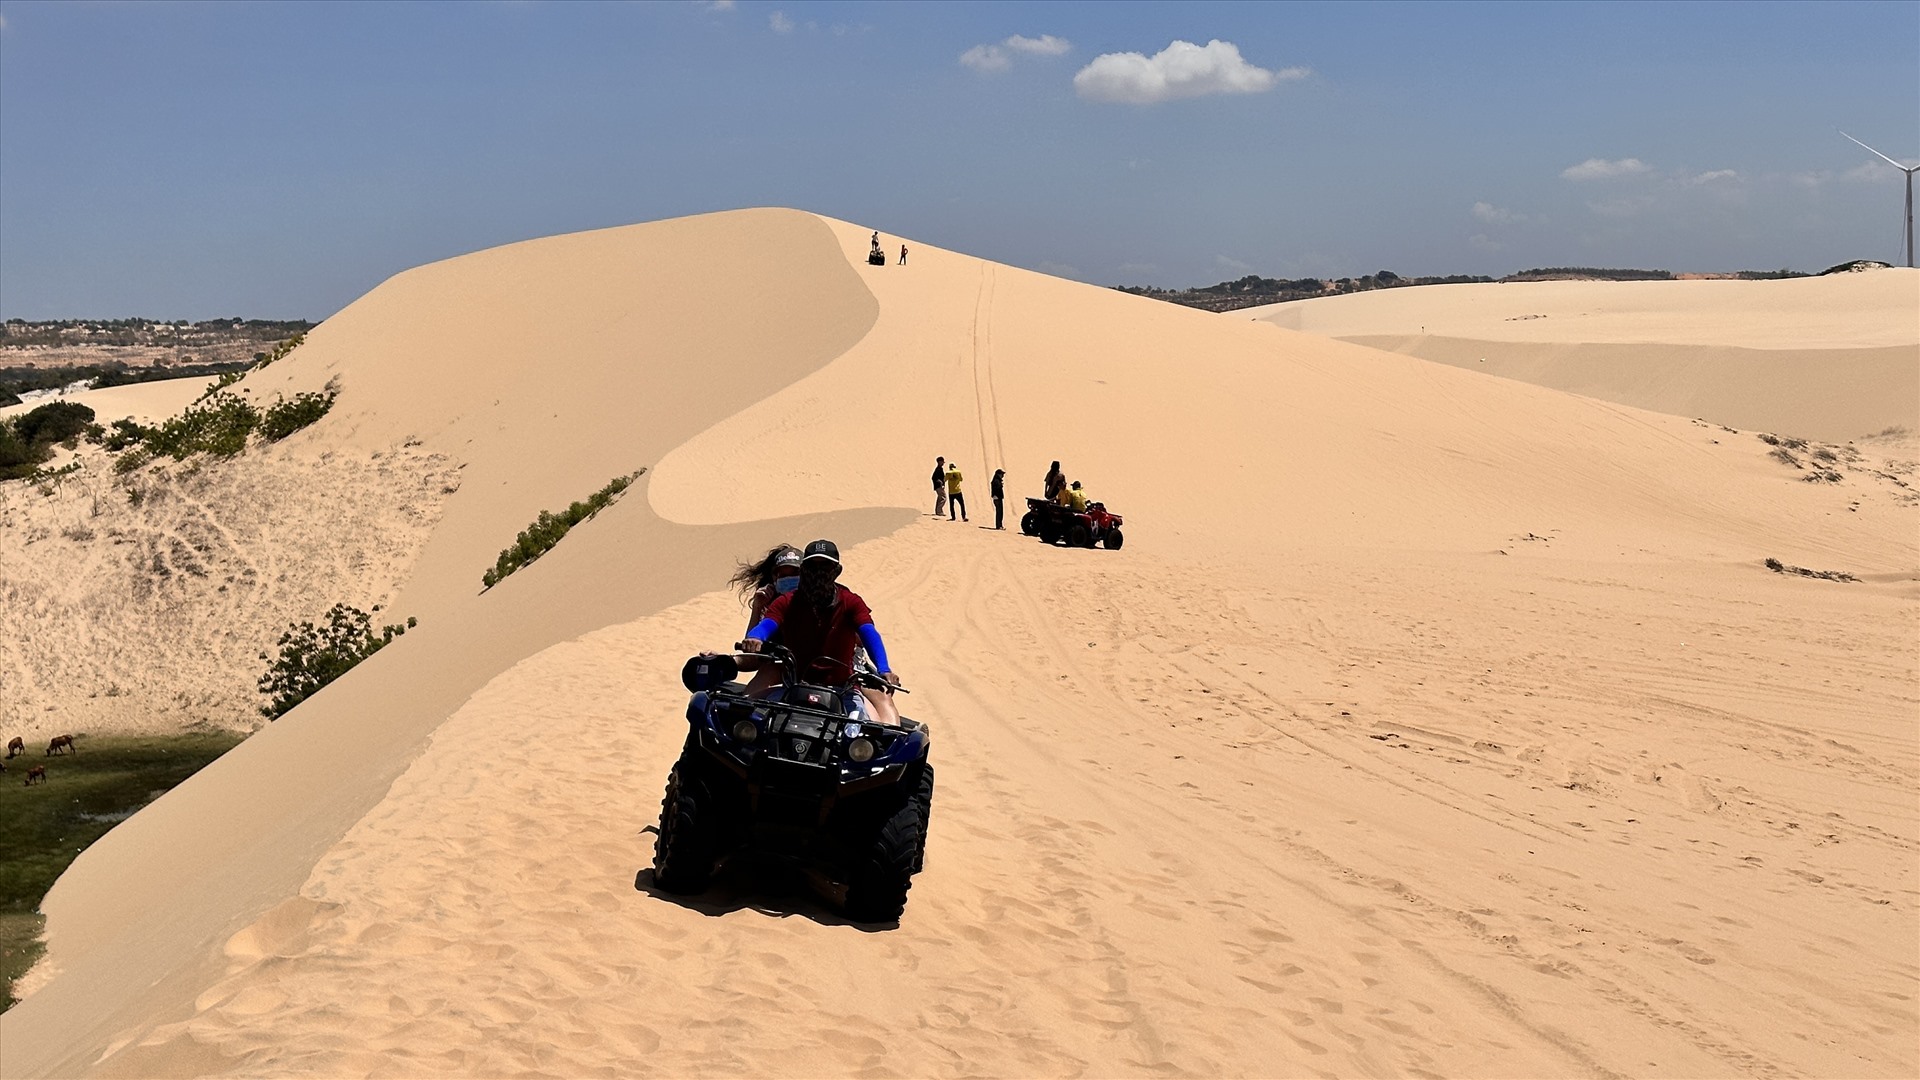 7. Việc tự lái xe môtô địa hình ở đồi cát cũng không quá khó, du khách có thể tự điều khiển hoặc sự hỗ trợ của nhân viên.